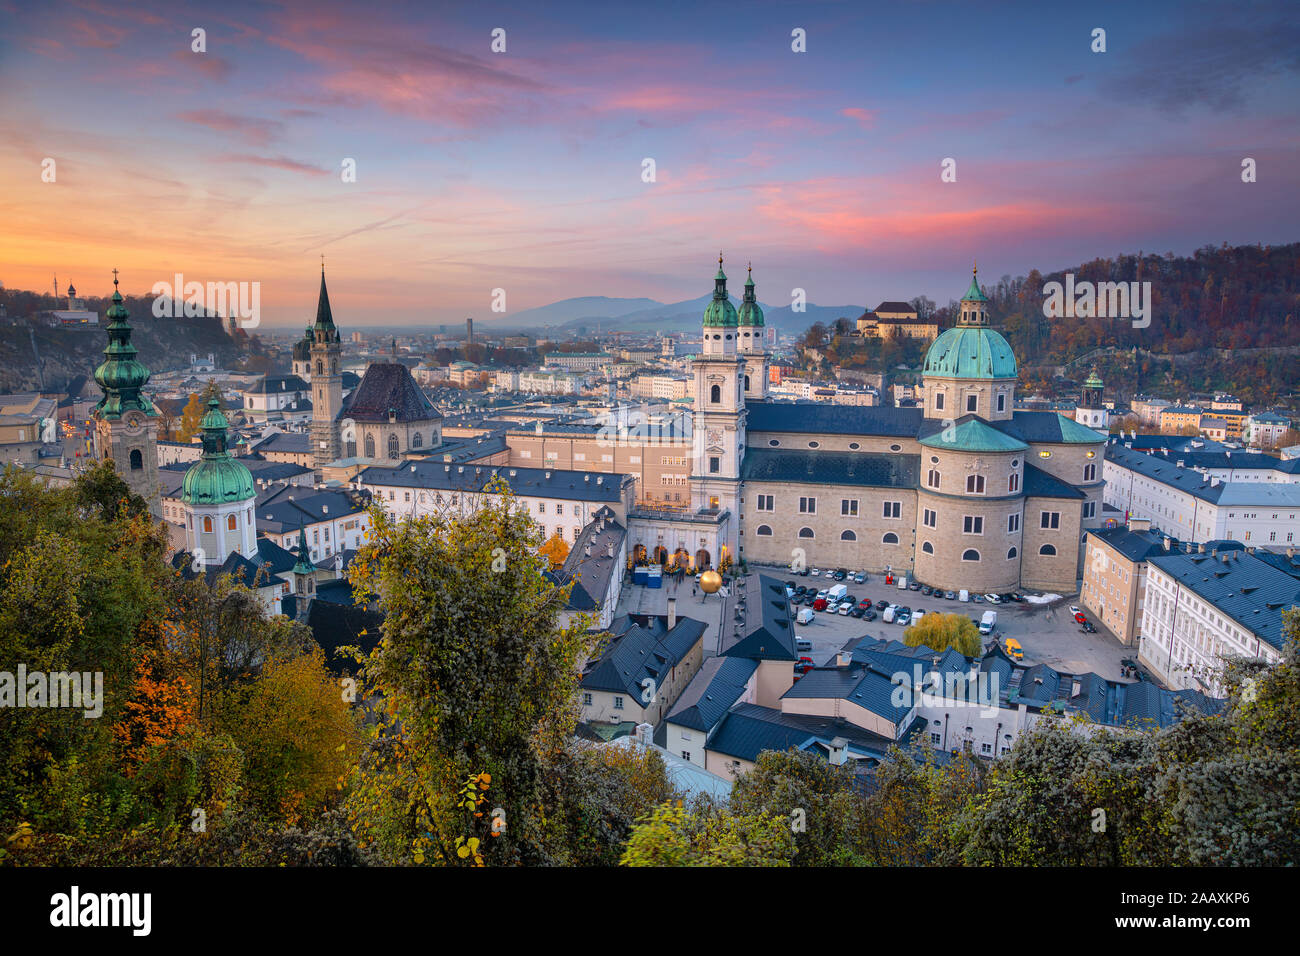 Salzbourg, Autriche. Image de la ville de Salzbourg, Autriche avec cathédrale de Salzbourg au cours de l'automne au coucher du soleil. Banque D'Images